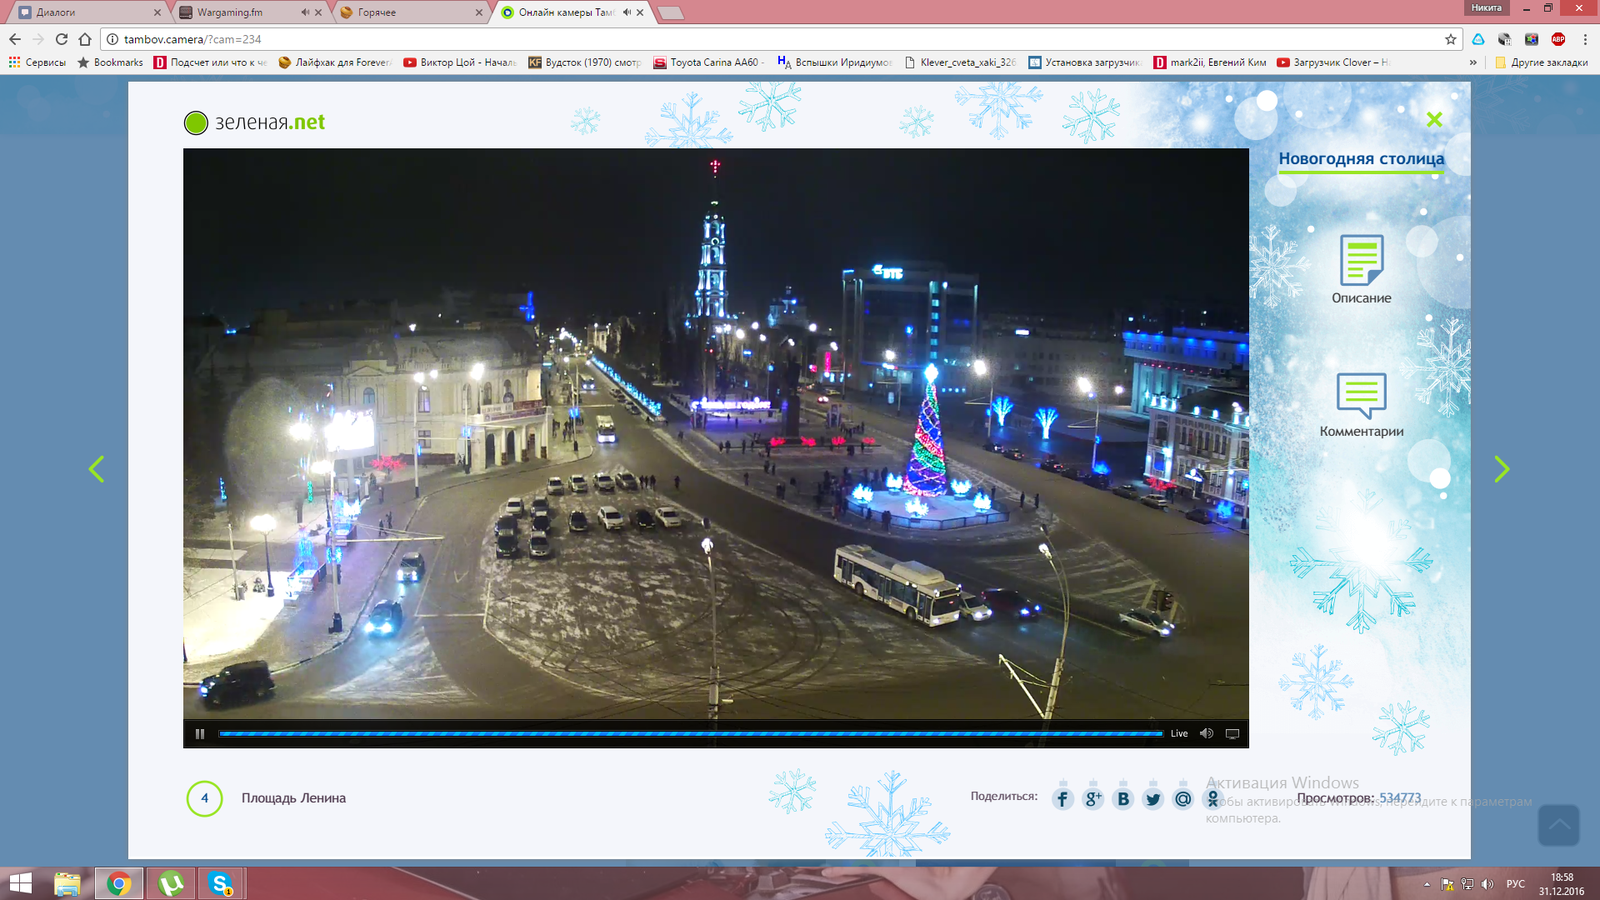 Tambov New Year's capital of Russia - My, Tambov, Christmas trees, New Year's Capital of Russia, Camera